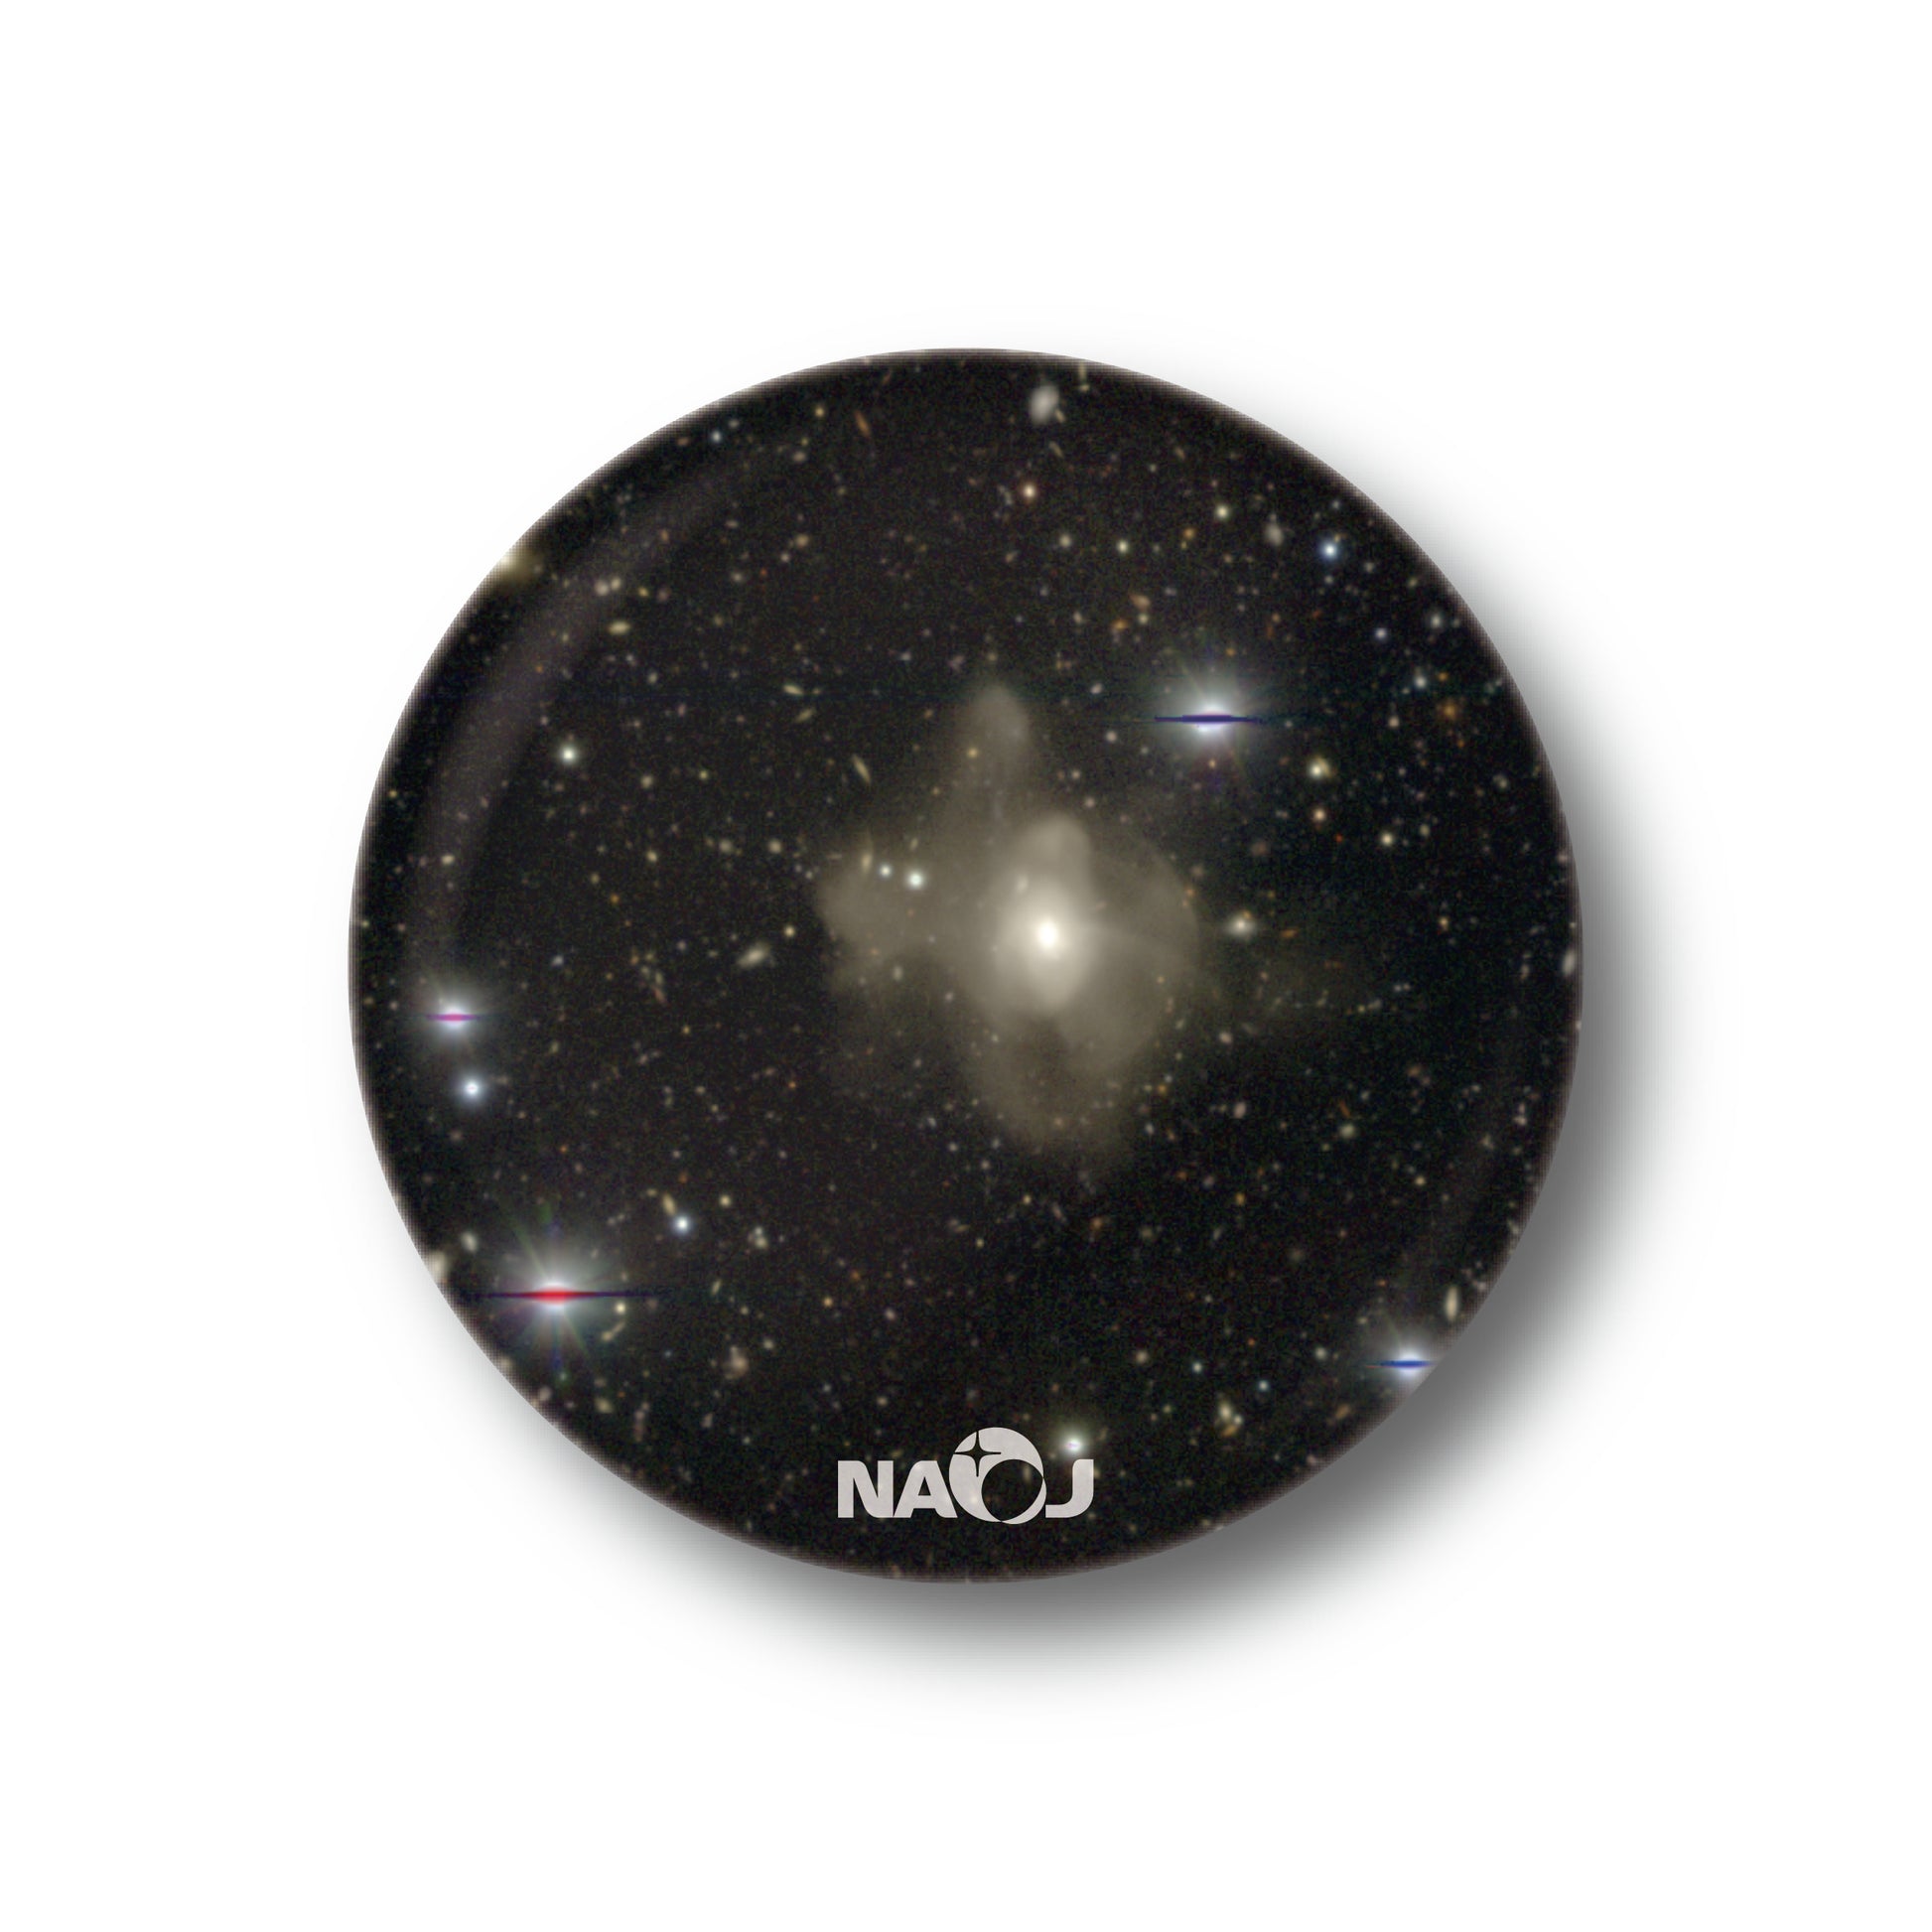 国立天文台  すばる望遠鏡HSCで見る宇宙  マグネット [小] 衝突銀河 2MASXJ16270254+4328340 01